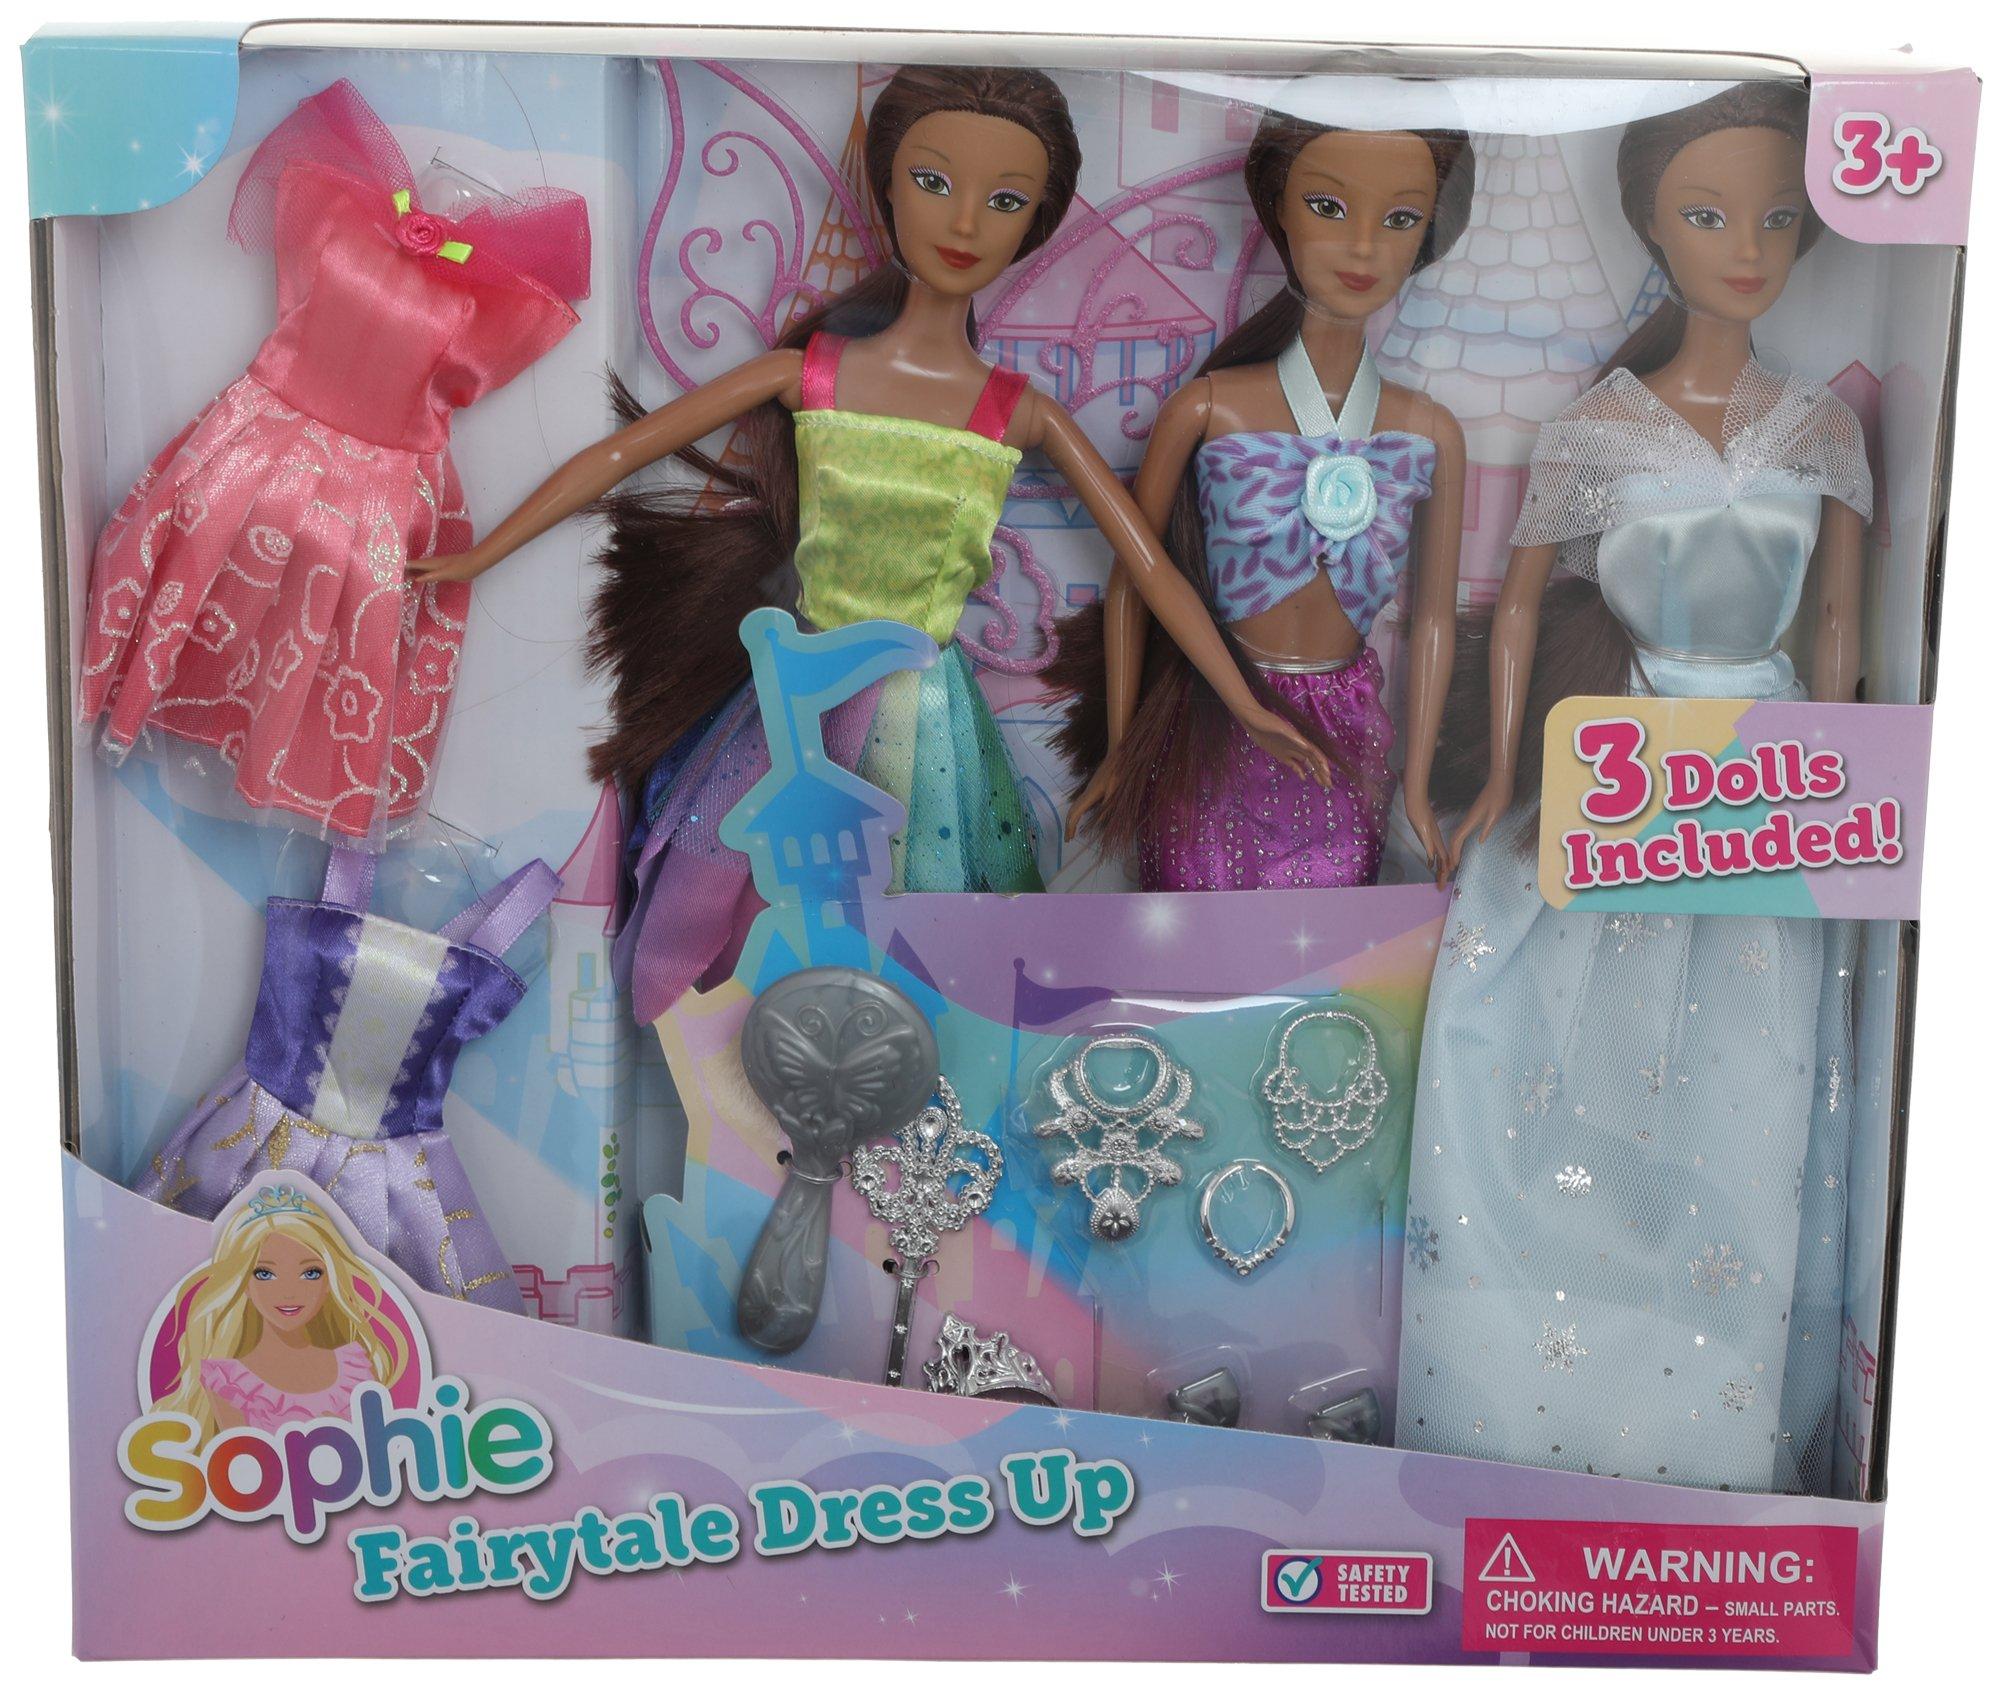 Fairtale Dress Up Dolls